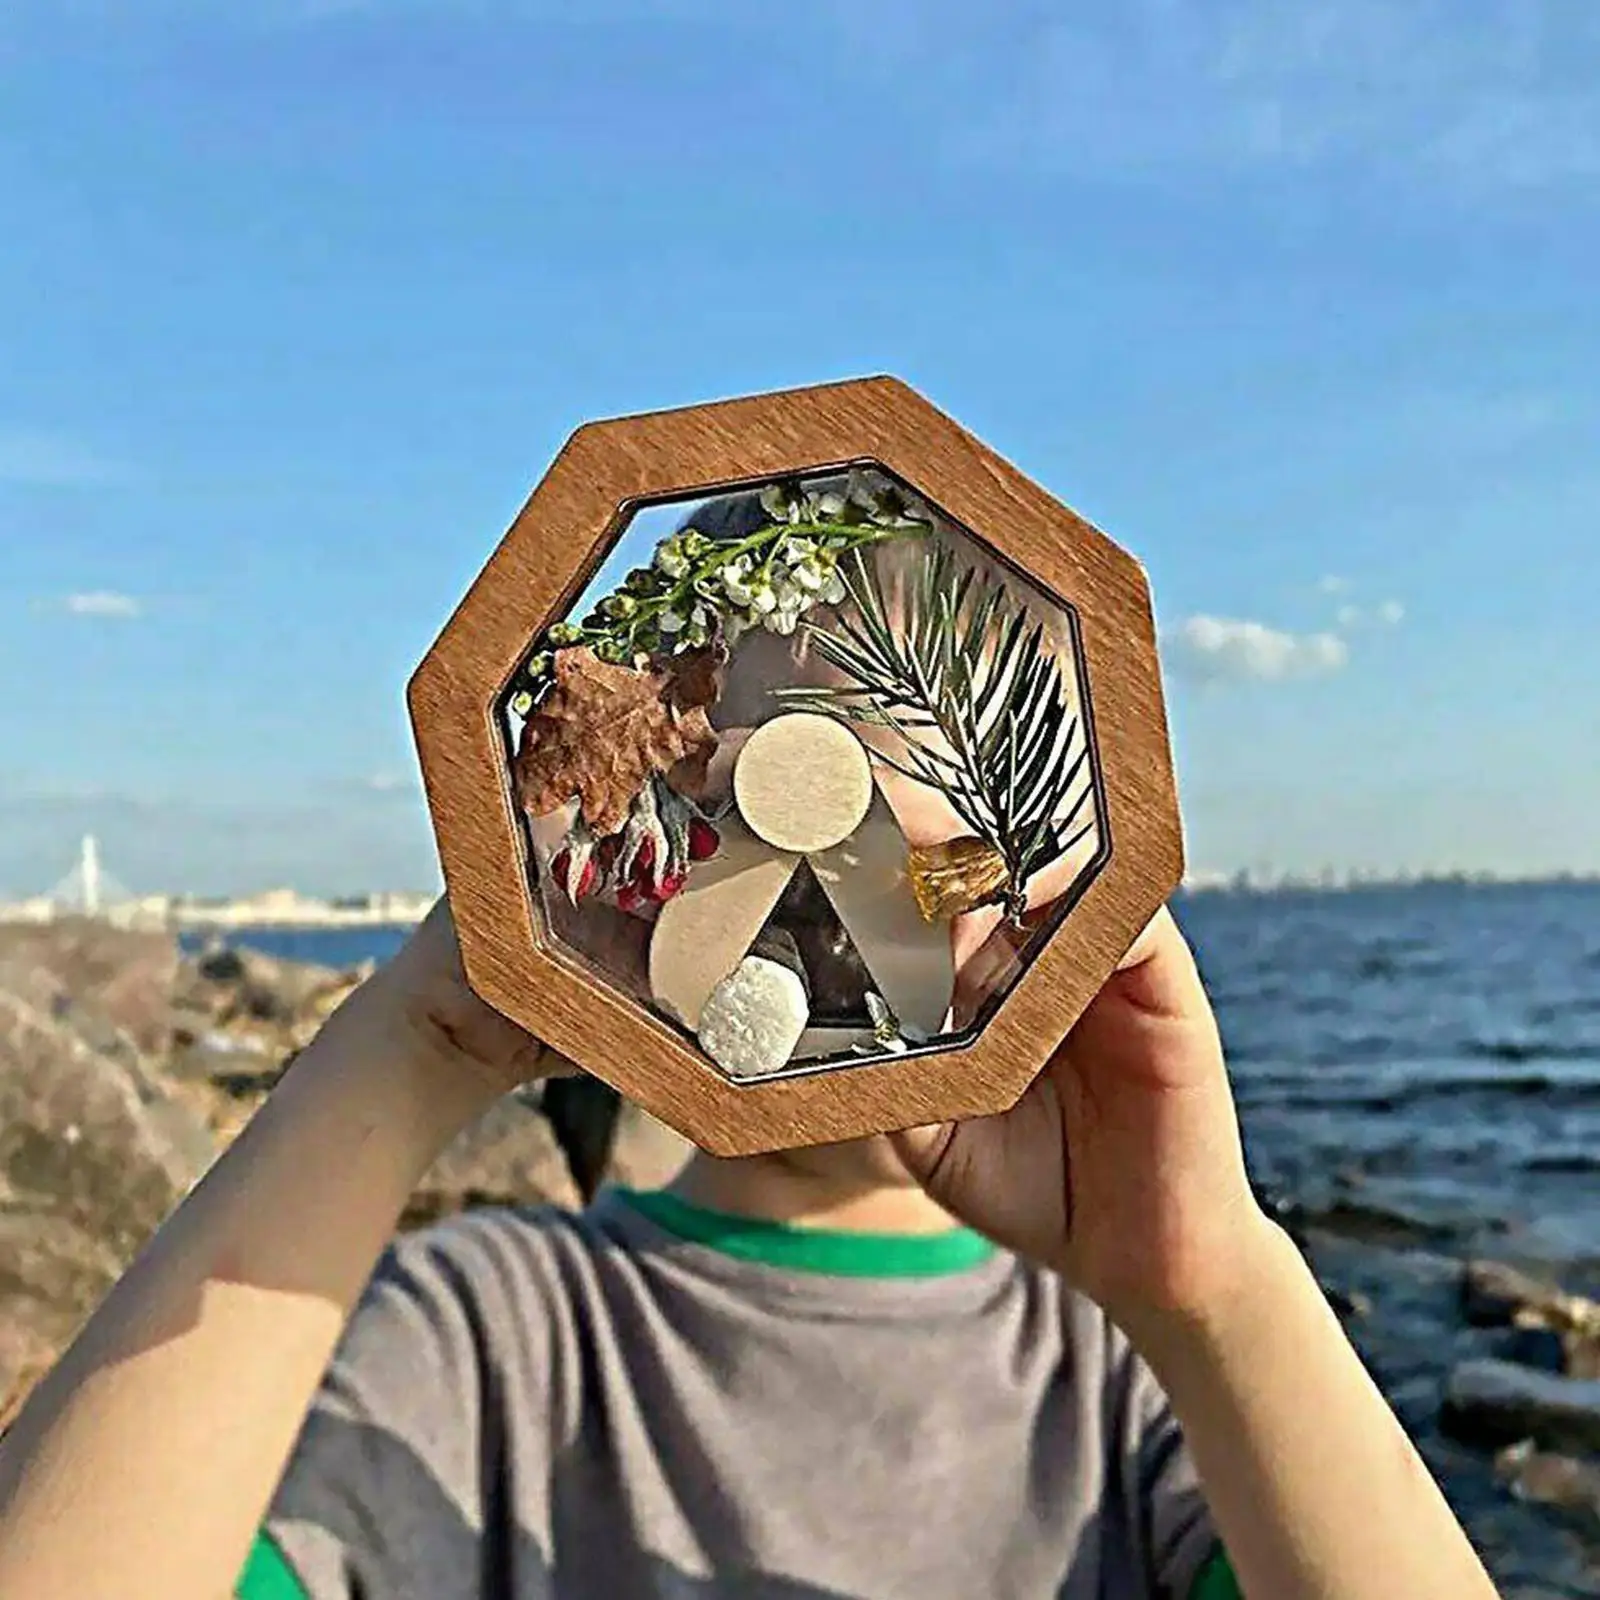 

Деревянный калейдоскоп «сделай сам» для детей, малышей, персонализированные подарки, Детская уличная игрушка, интерактивная игра для родителей и детей L9u6